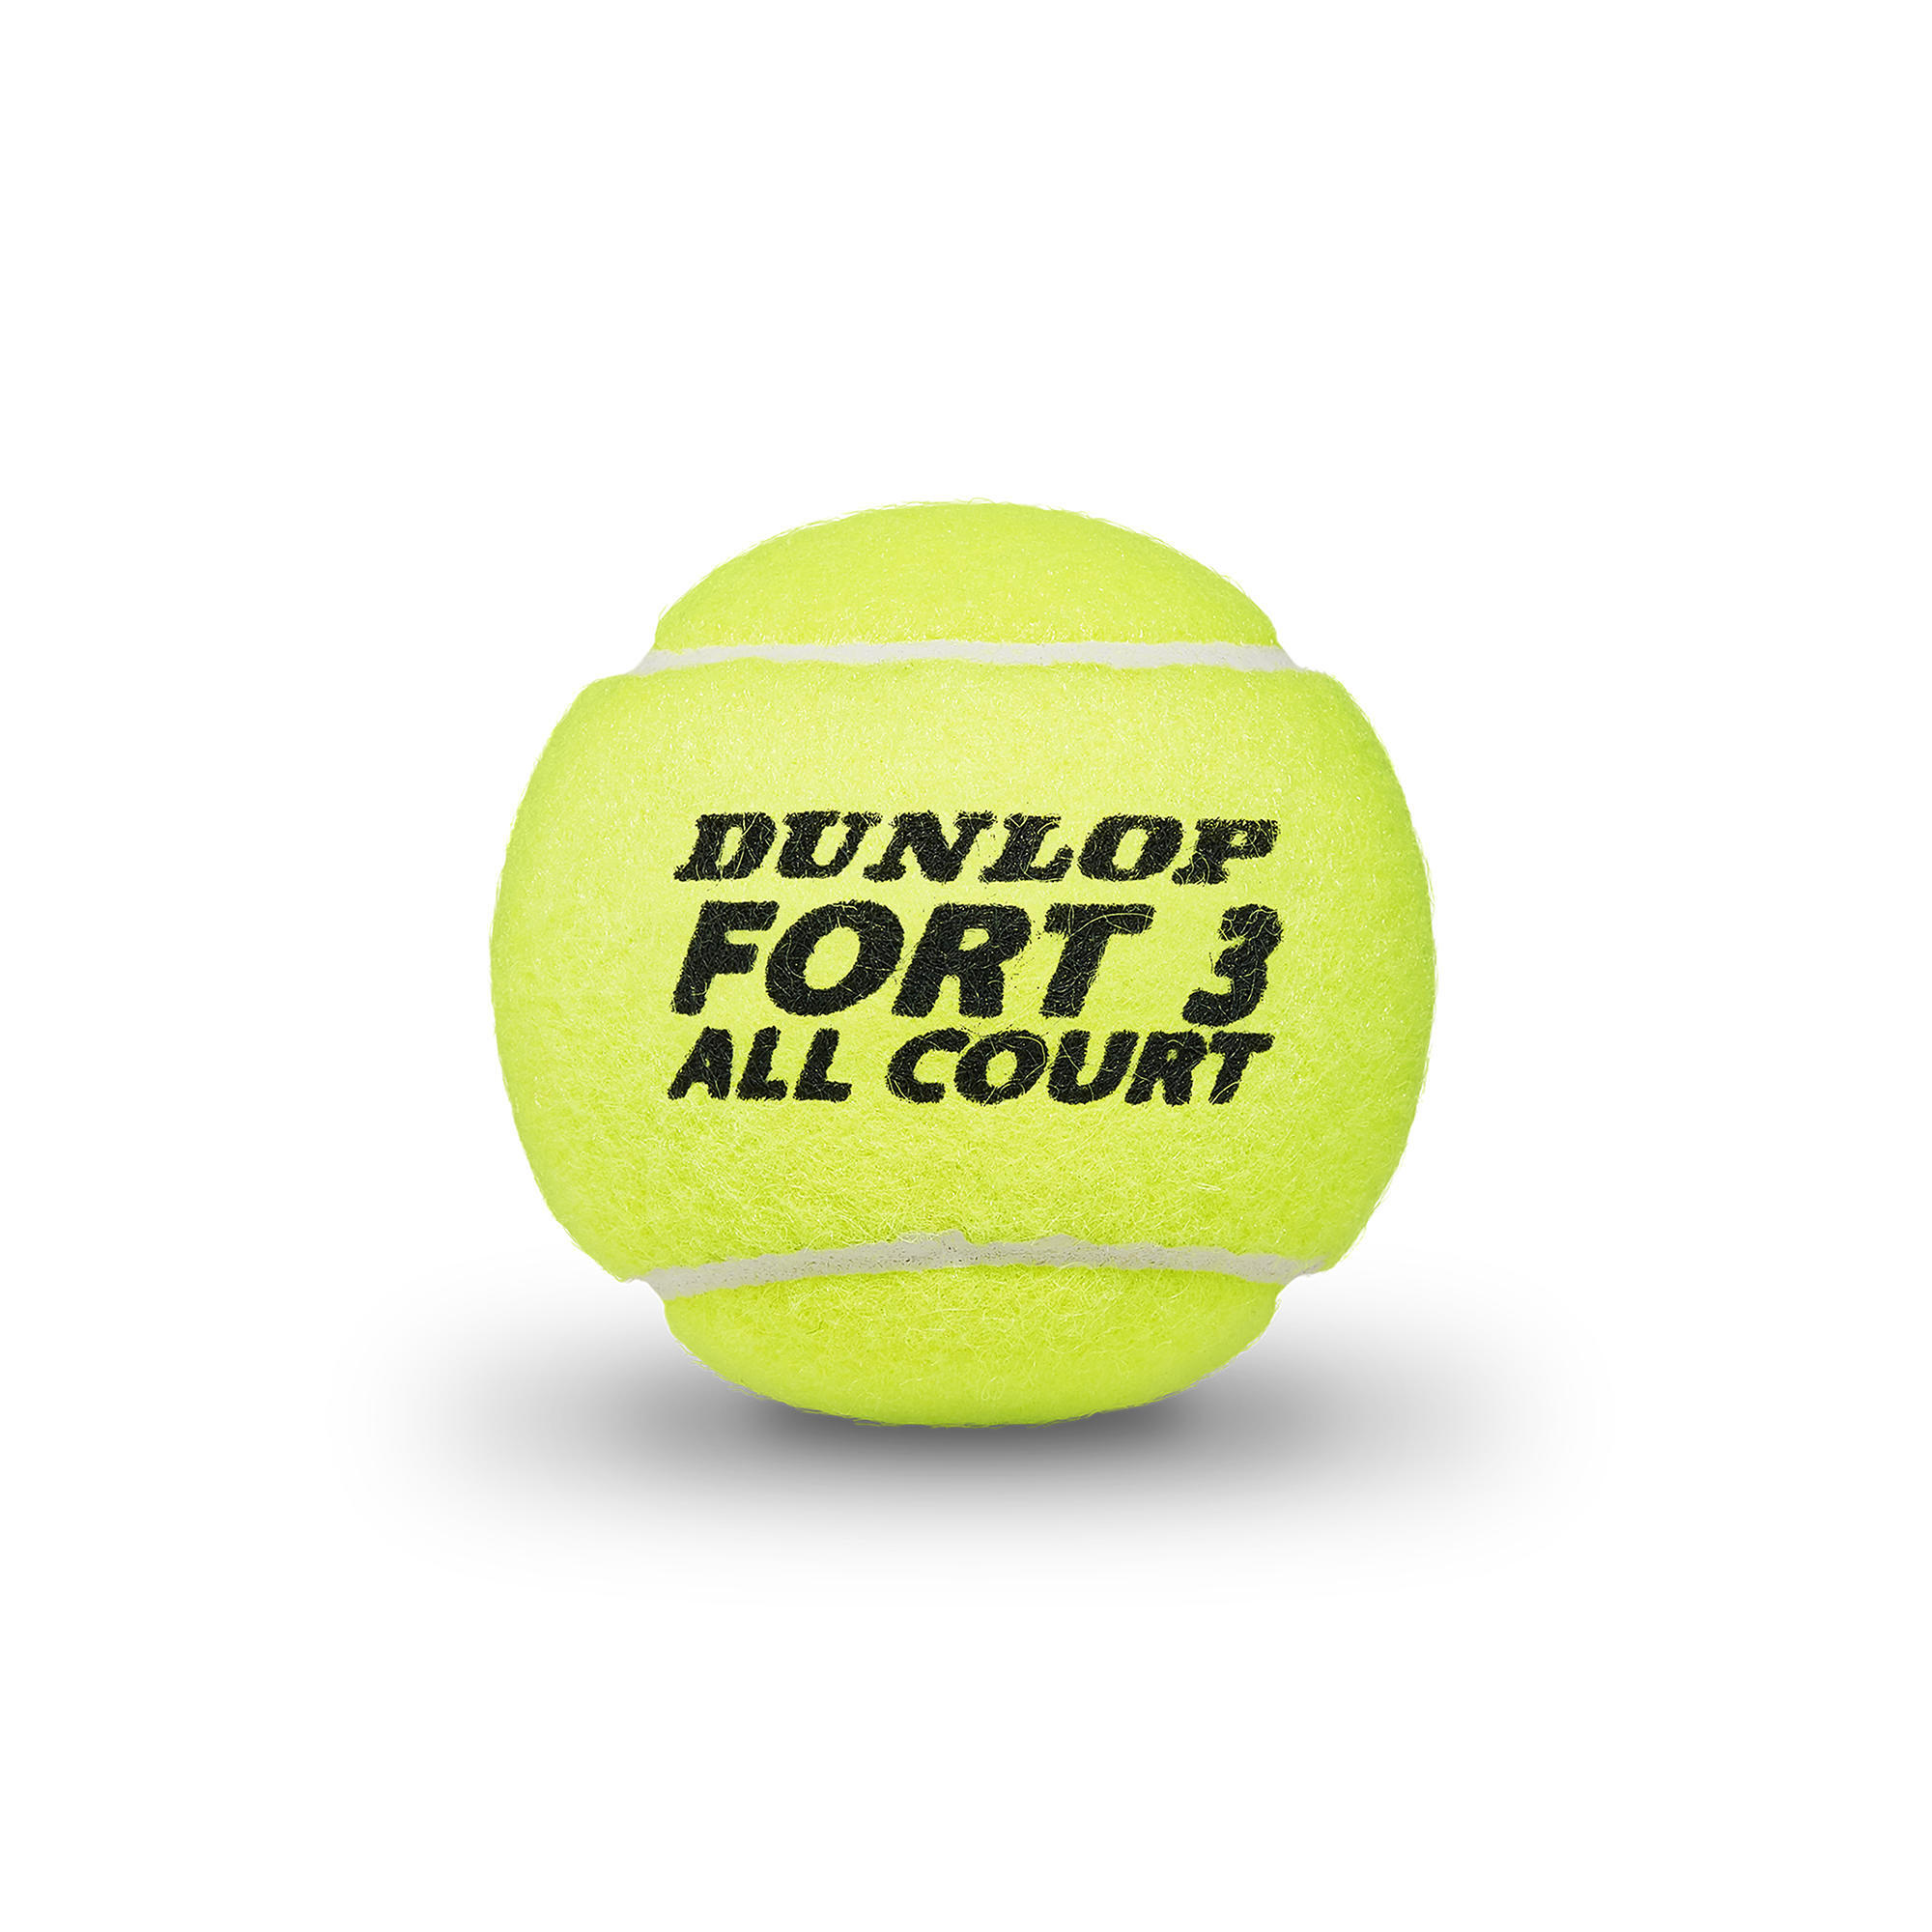 Теннисные мячи Dunlop Fort All Court Control, банка 4 шт., неоново-желтый теннисные мячи dunlop fort clay court x4